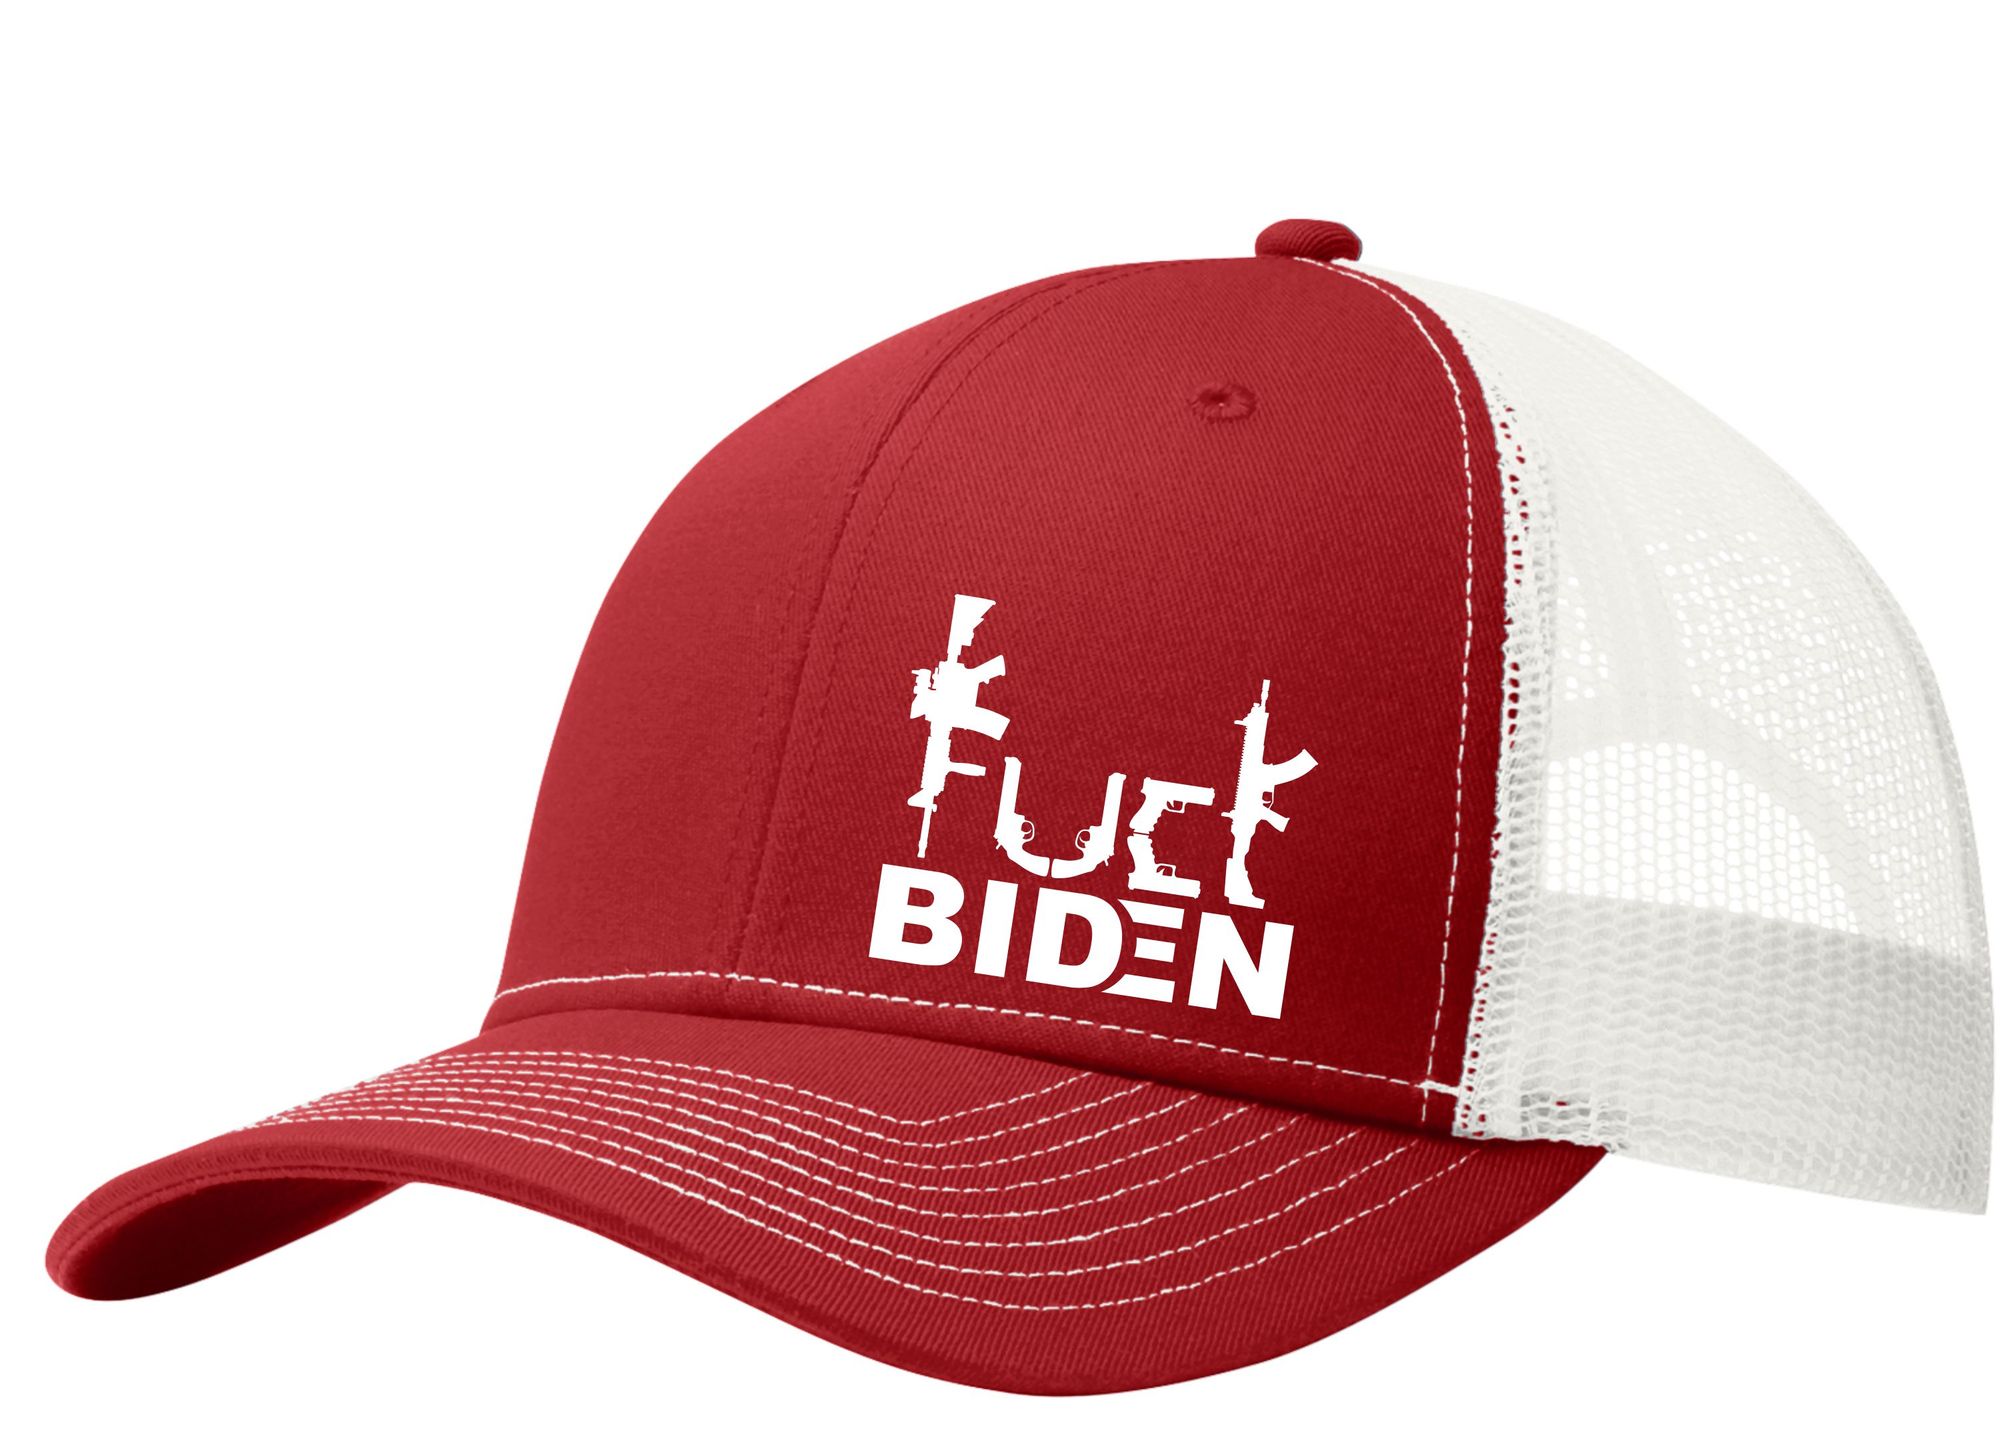 Guns Fuck Biden trucker cap 5